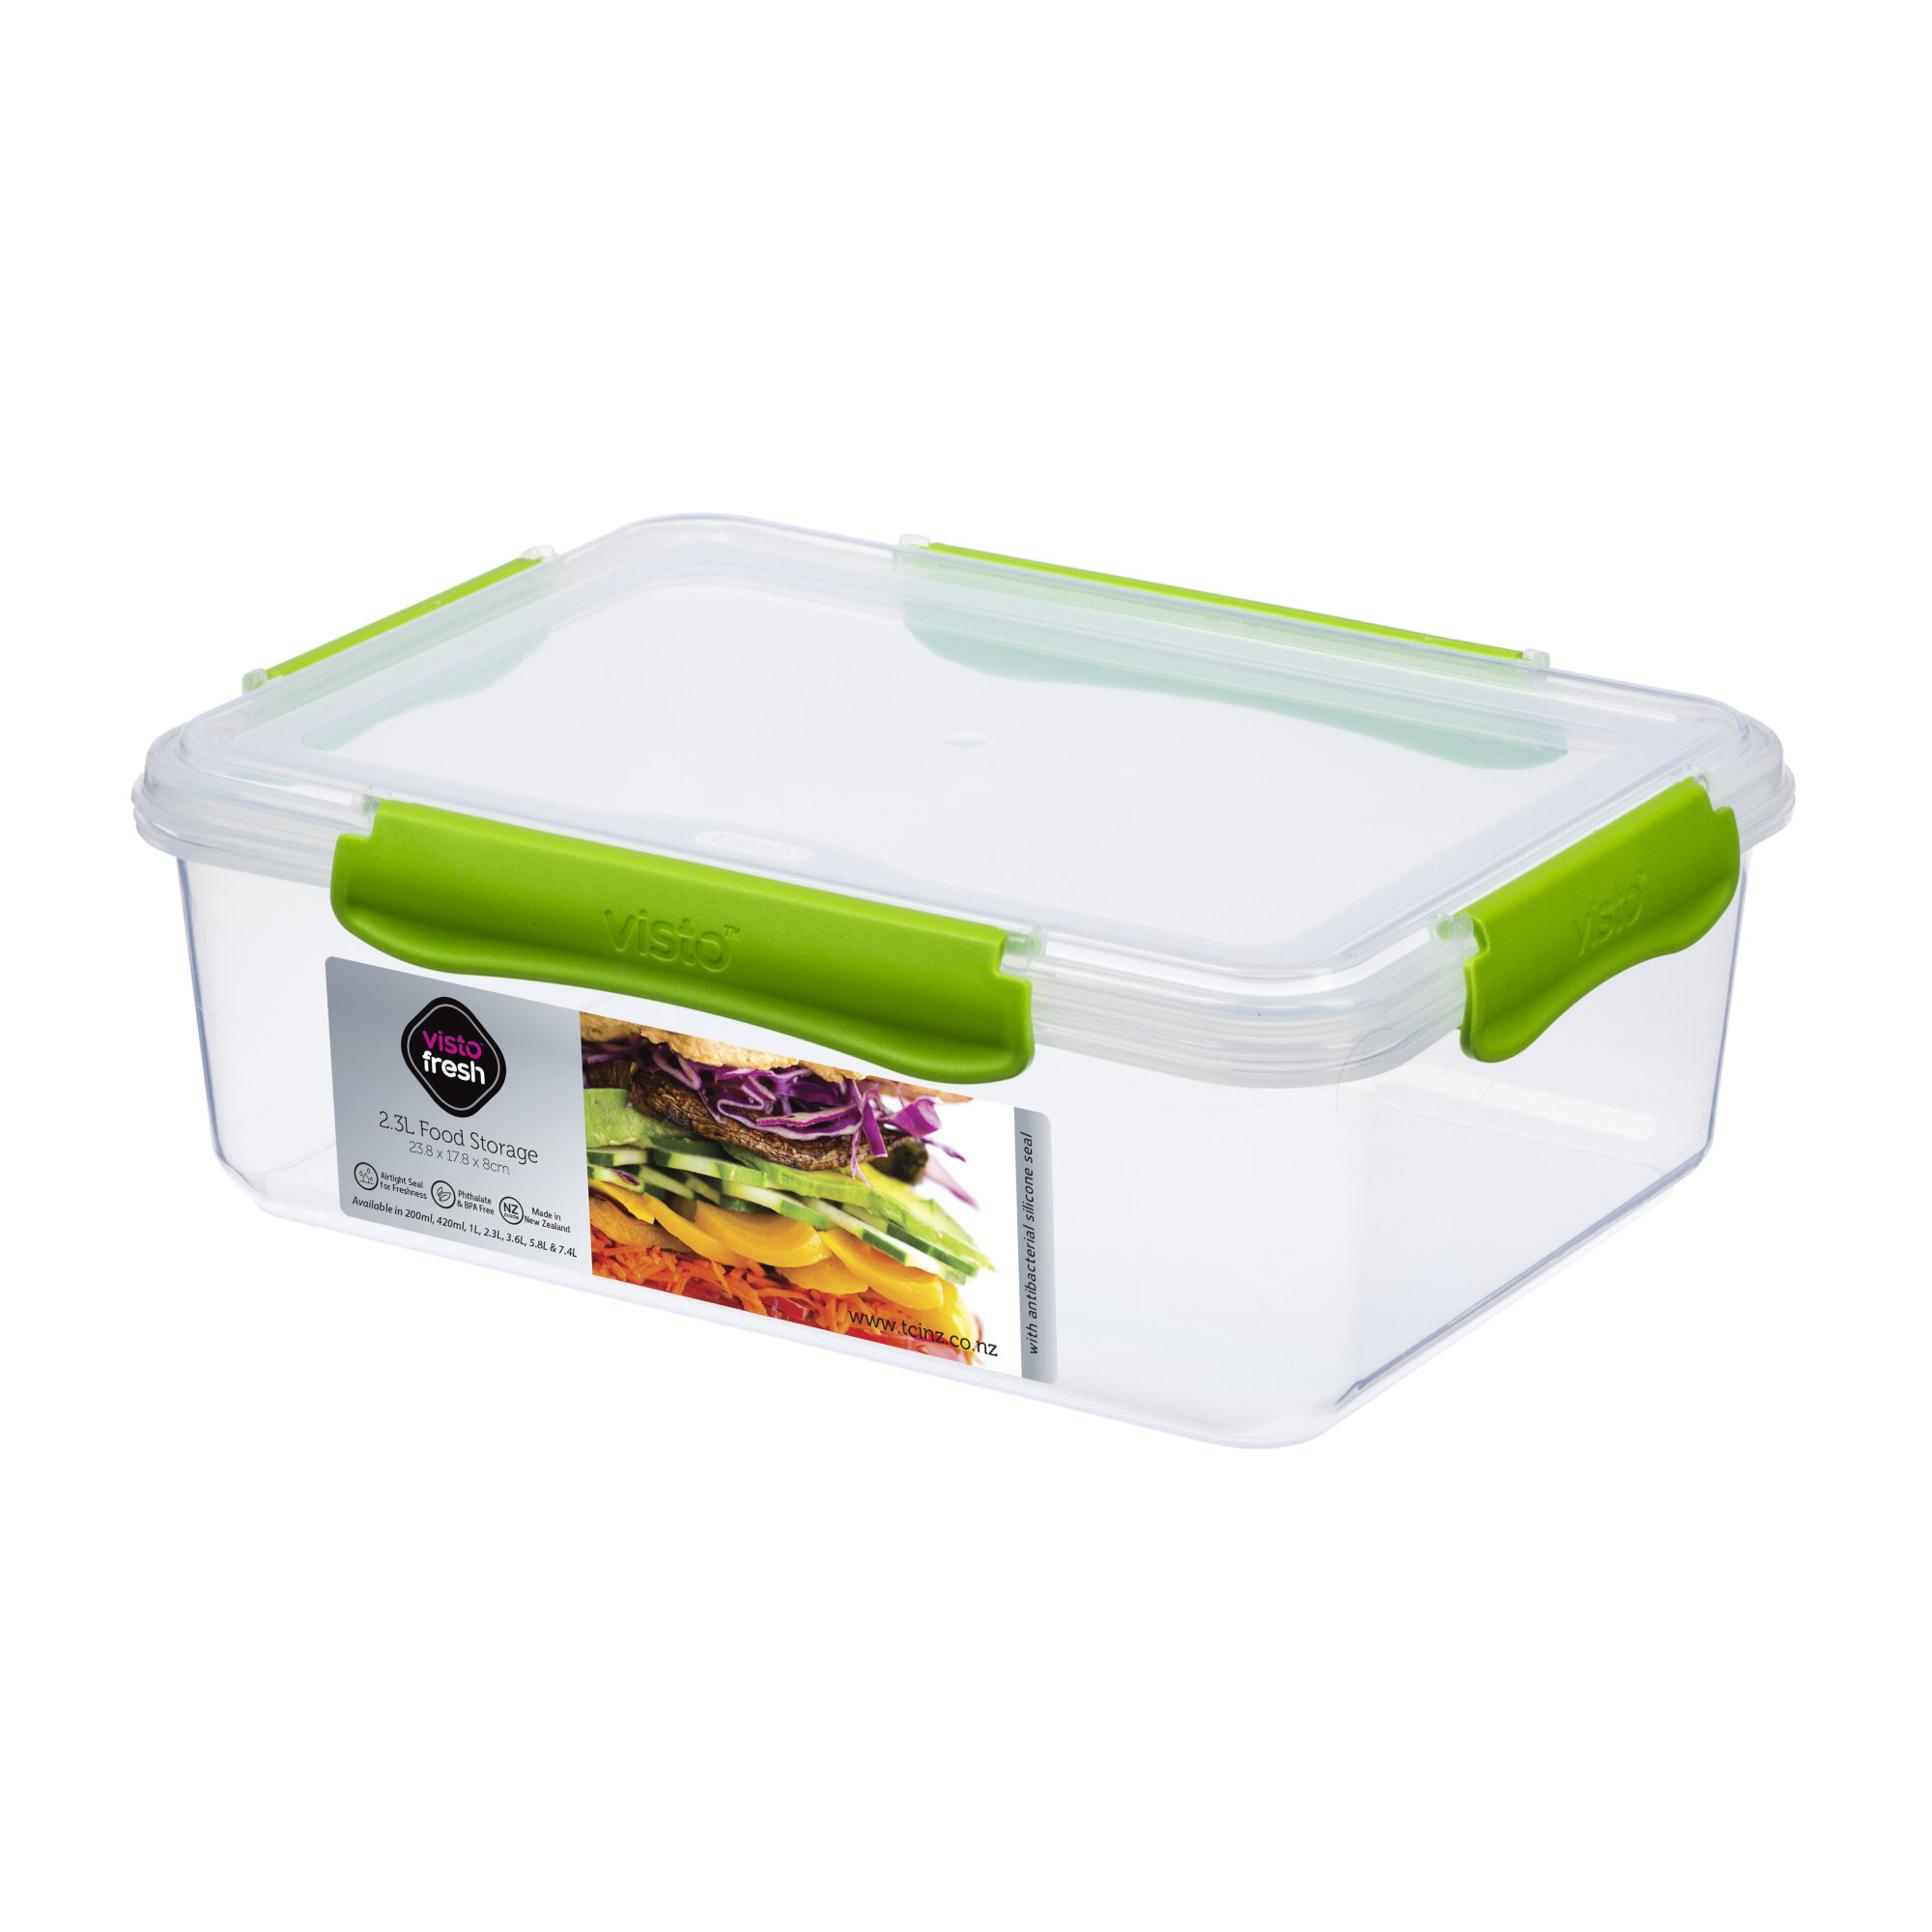 Visto Fresh 2.3 Liter 3 Container Food Storage Set